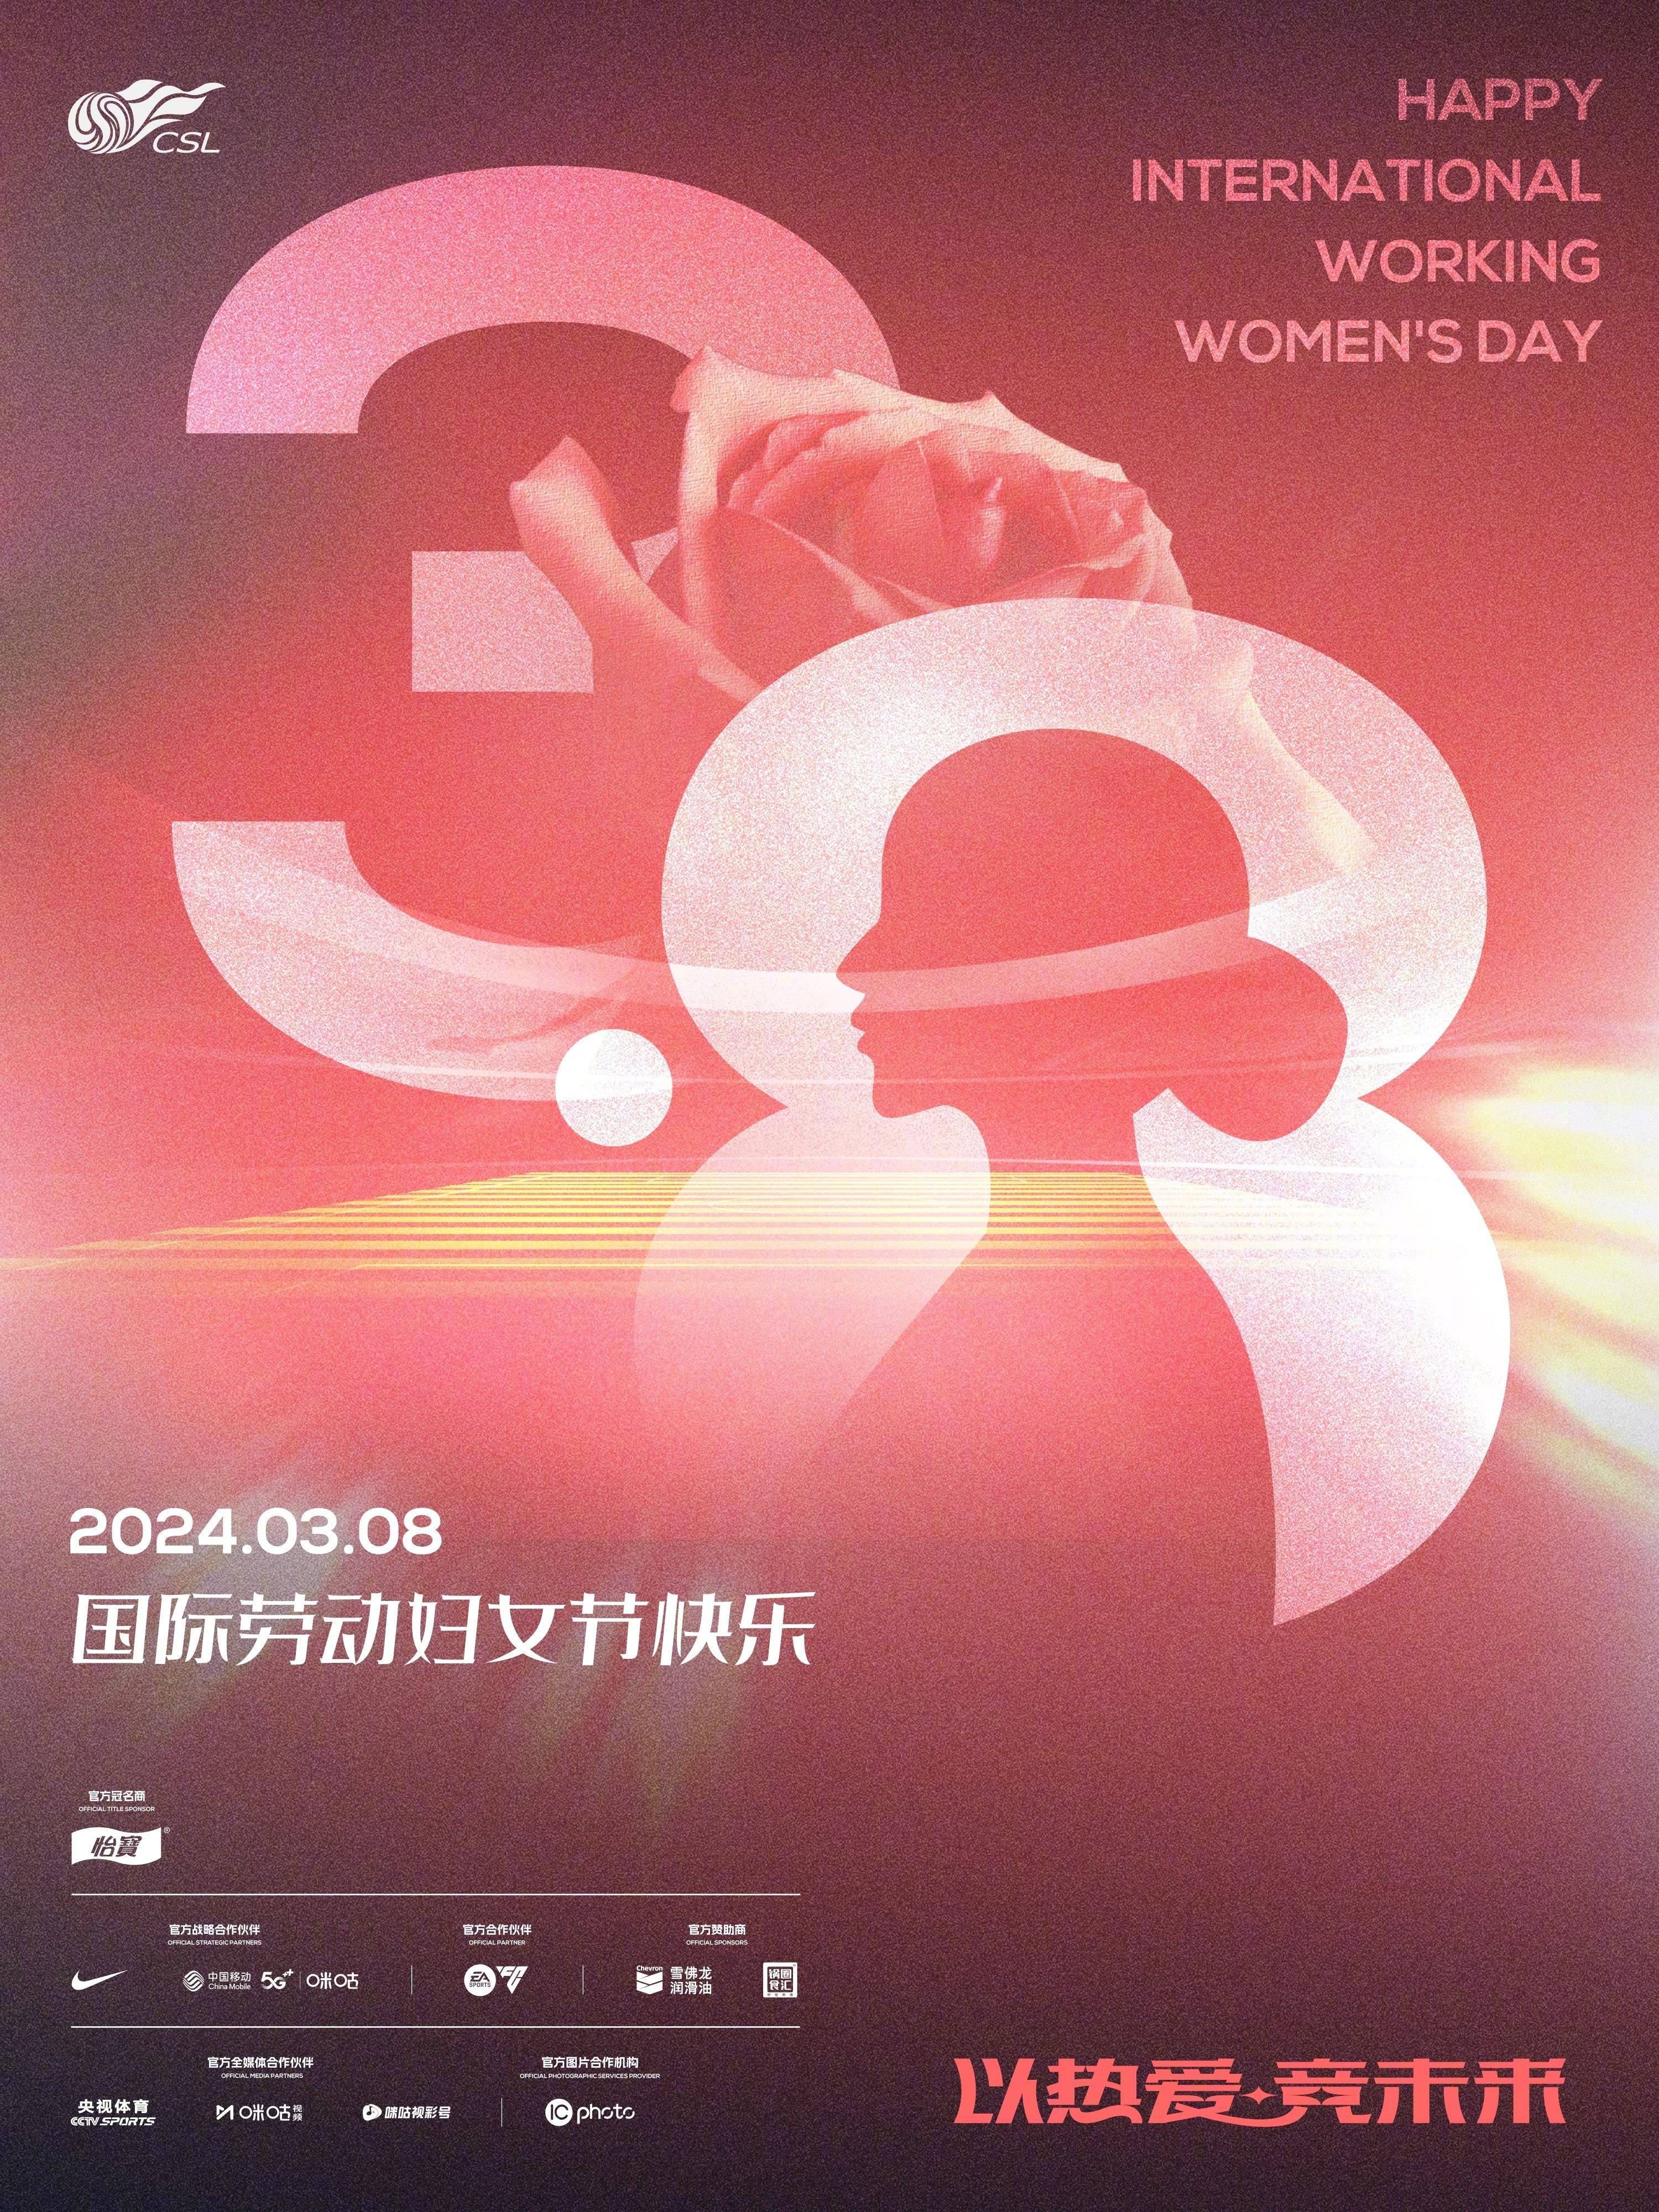 中超联赛祝愿所有女性 节日快乐